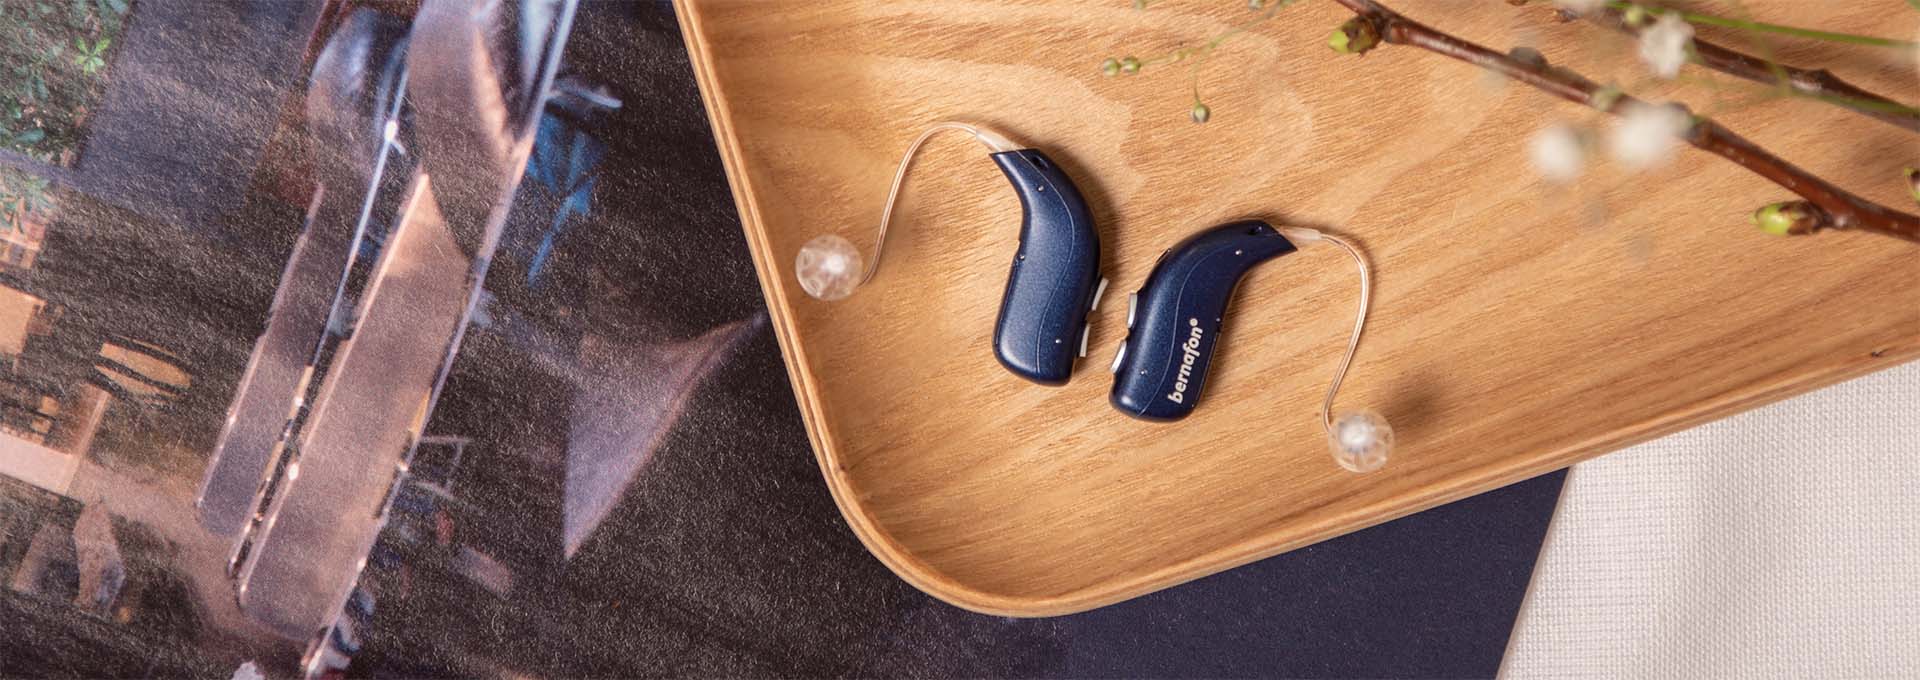 Des appareils auditifs rechargeables Bernafon Alpha bleu nuit placés à côté d'un smartphone sur un chapeau de paille avec un foulard imprimé animal